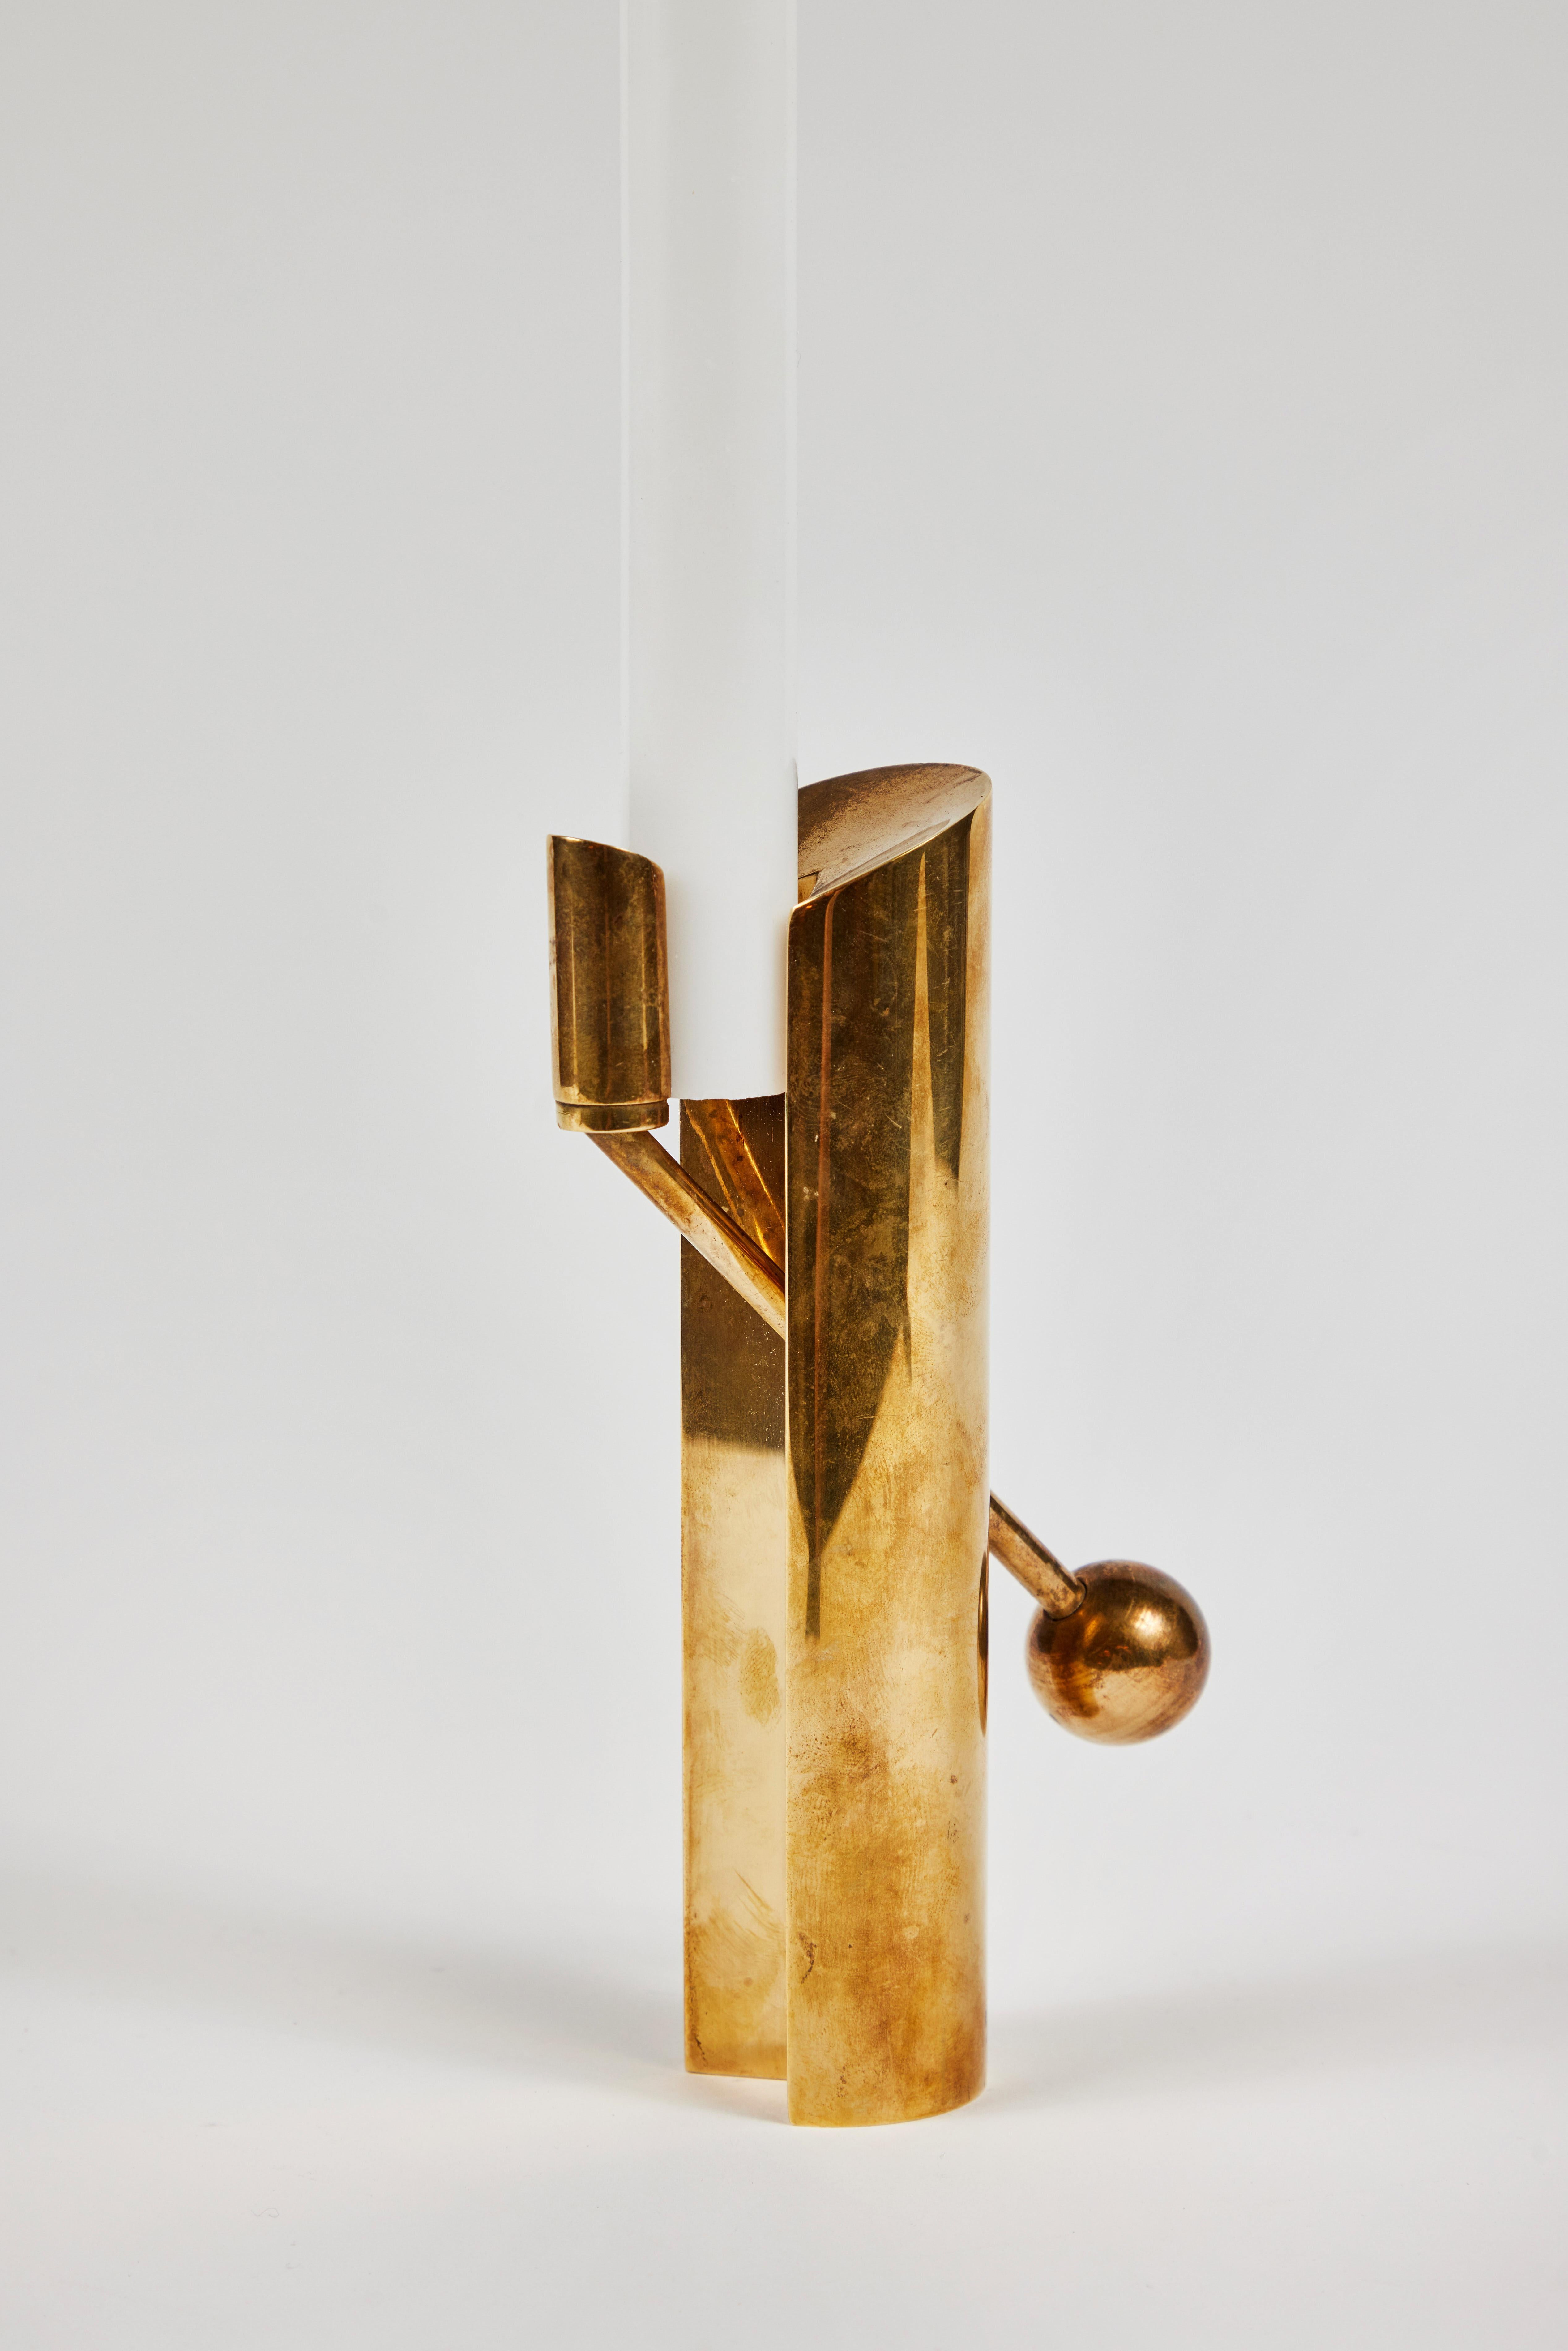 Bougeoir en laiton Pierre Forsell modèle #1607 des années 1950 pour Skultuna. 

Réalisé en laiton massif, ce bougeoir sculptural polyvalent et d'un raffinement exquis est considéré à juste titre comme l'une des créations suédoises les plus